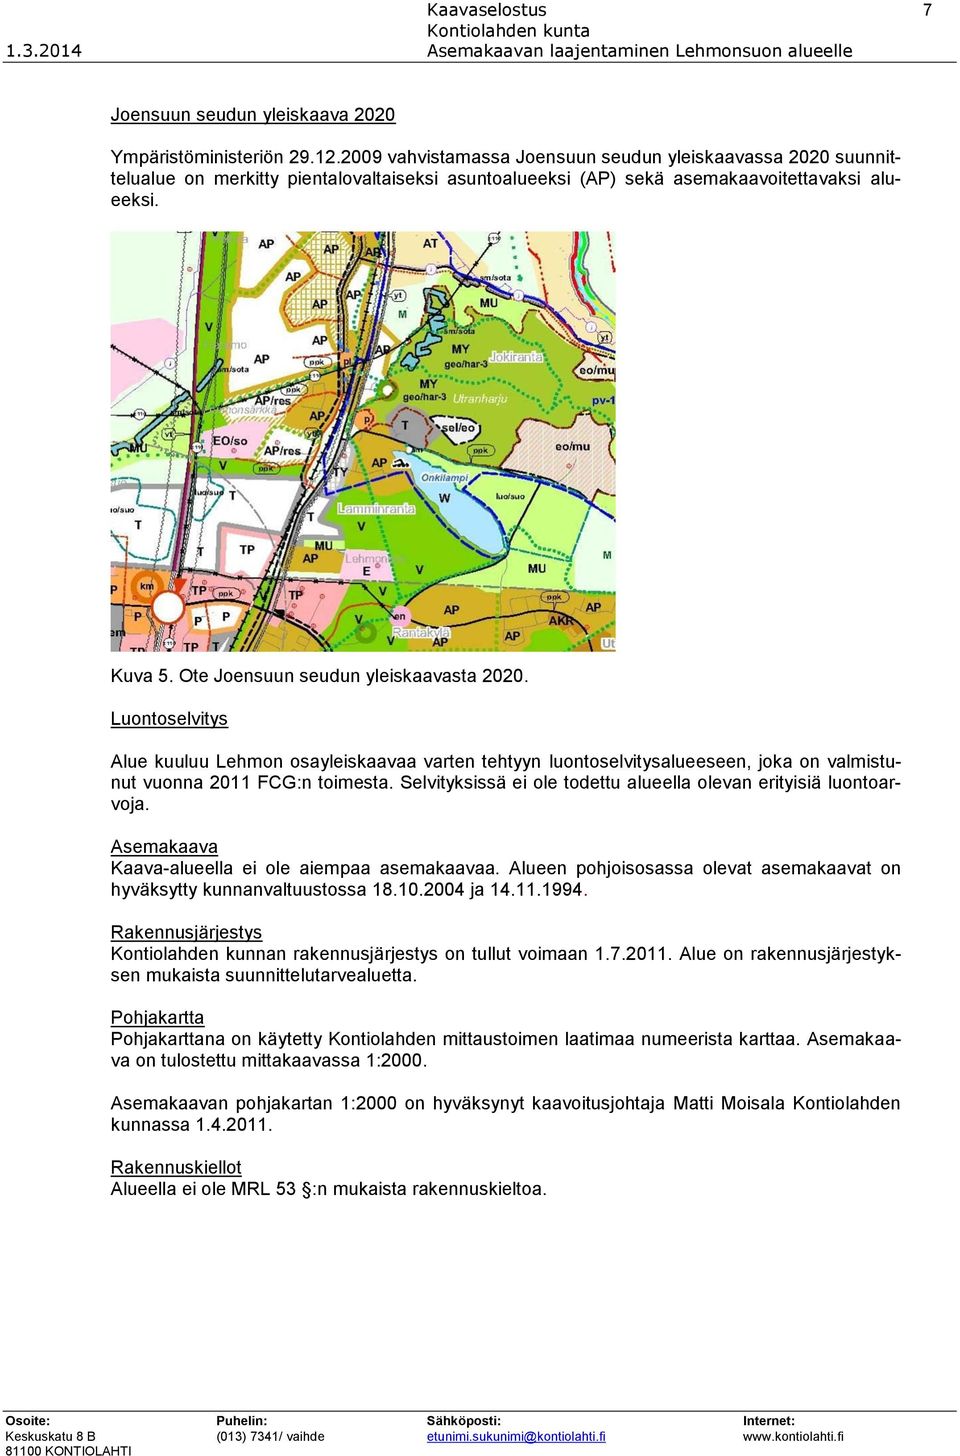 Ote Joensuun seudun yleiskaavasta 2020. Luontoselvitys Alue kuuluu Lehmon osayleiskaavaa varten tehtyyn luontoselvitysalueeseen, joka on valmistunut vuonna 2011 FCG:n toimesta.